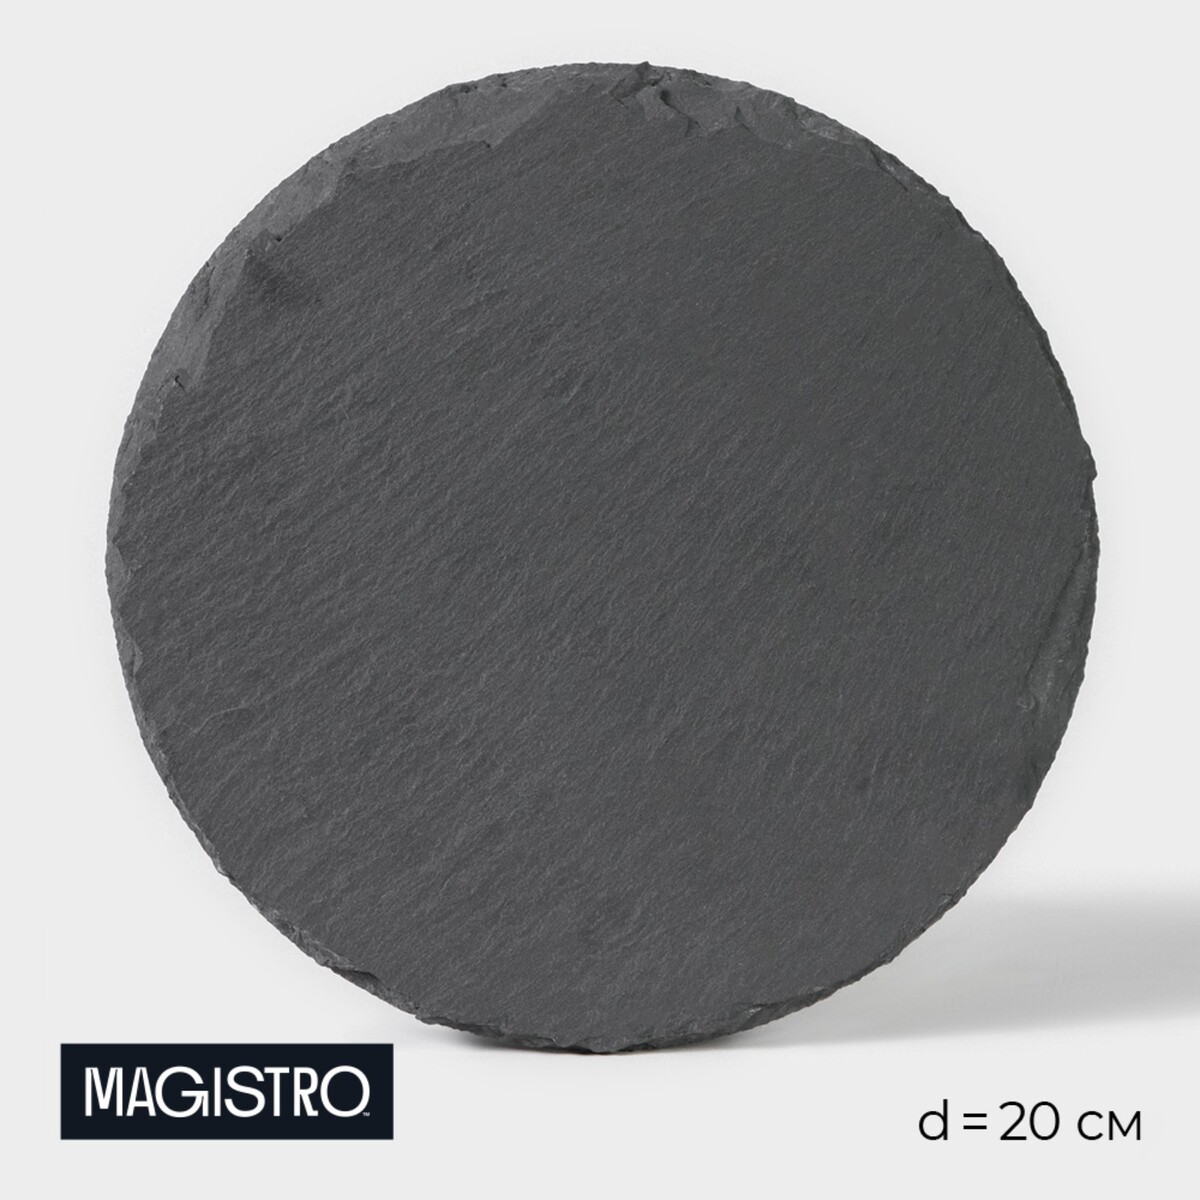 Доска для подачи из сланца magistro valley, d=20 см доска для подачи magistro valley из сланца 30×29 см в виде сердца